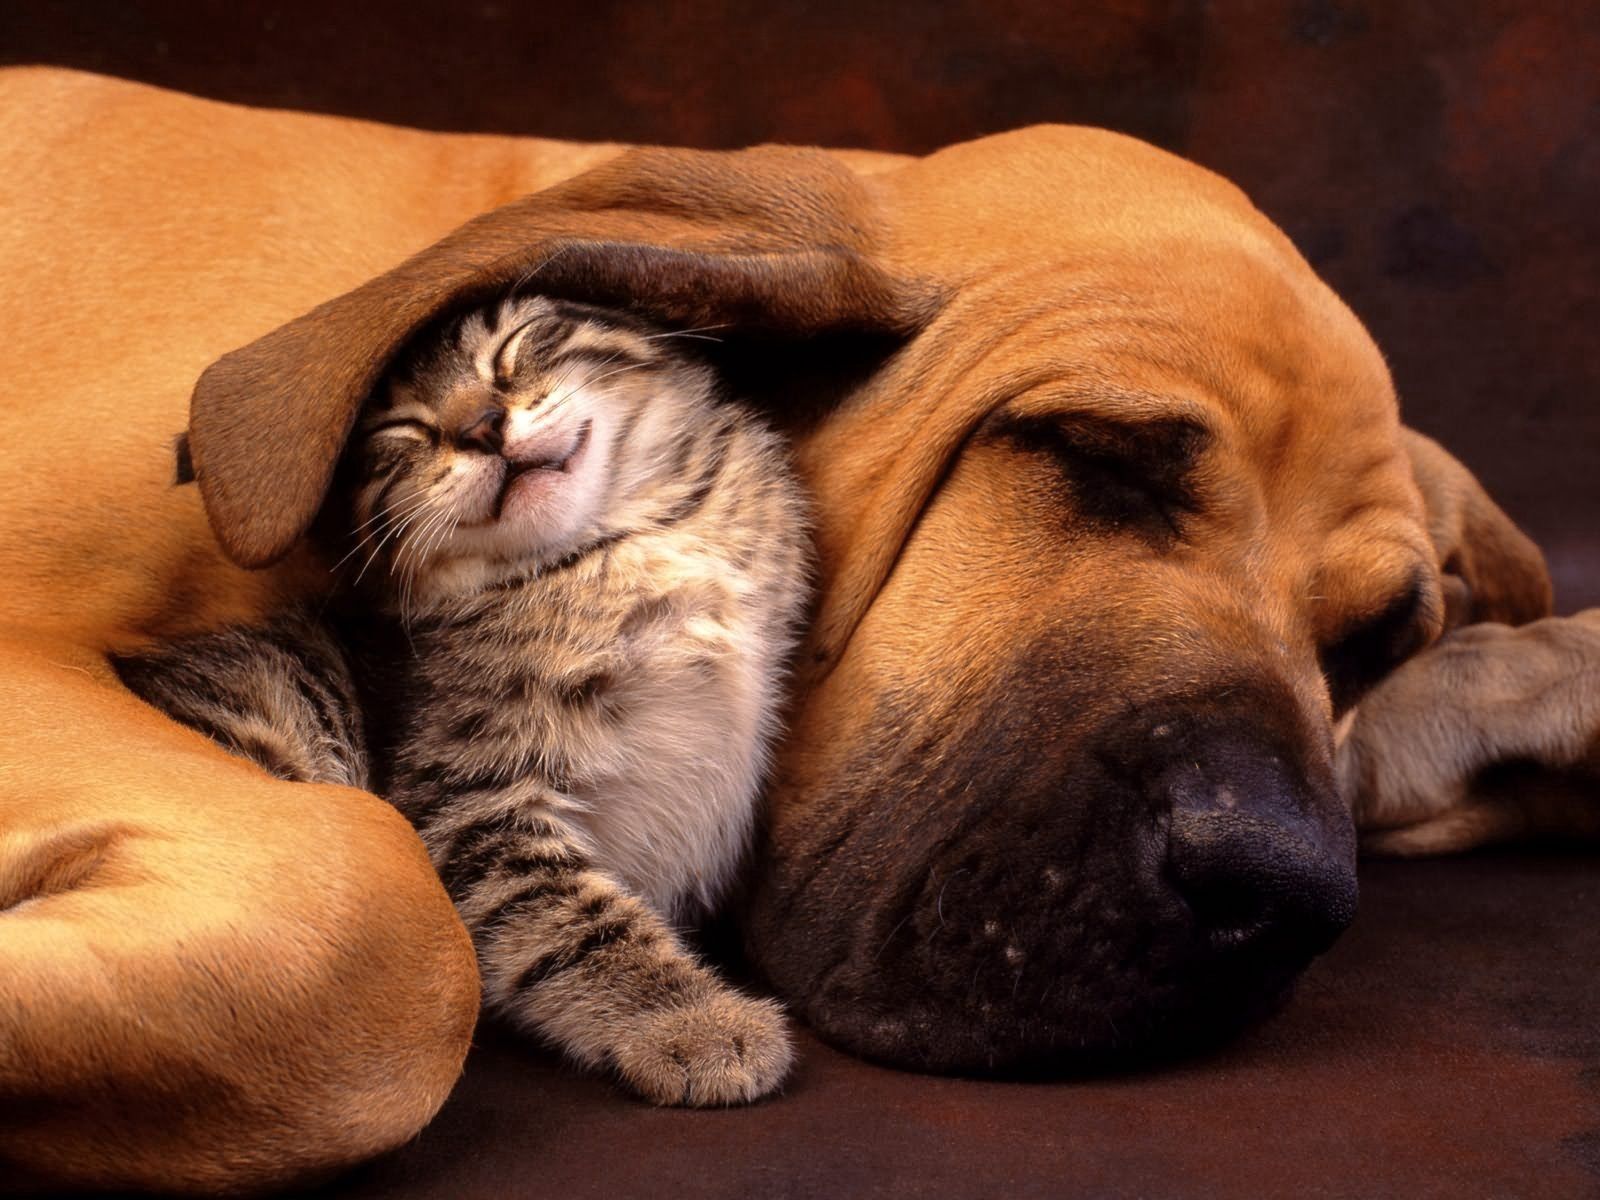 kitty, kitten, animals, dog, care, ear, an ear